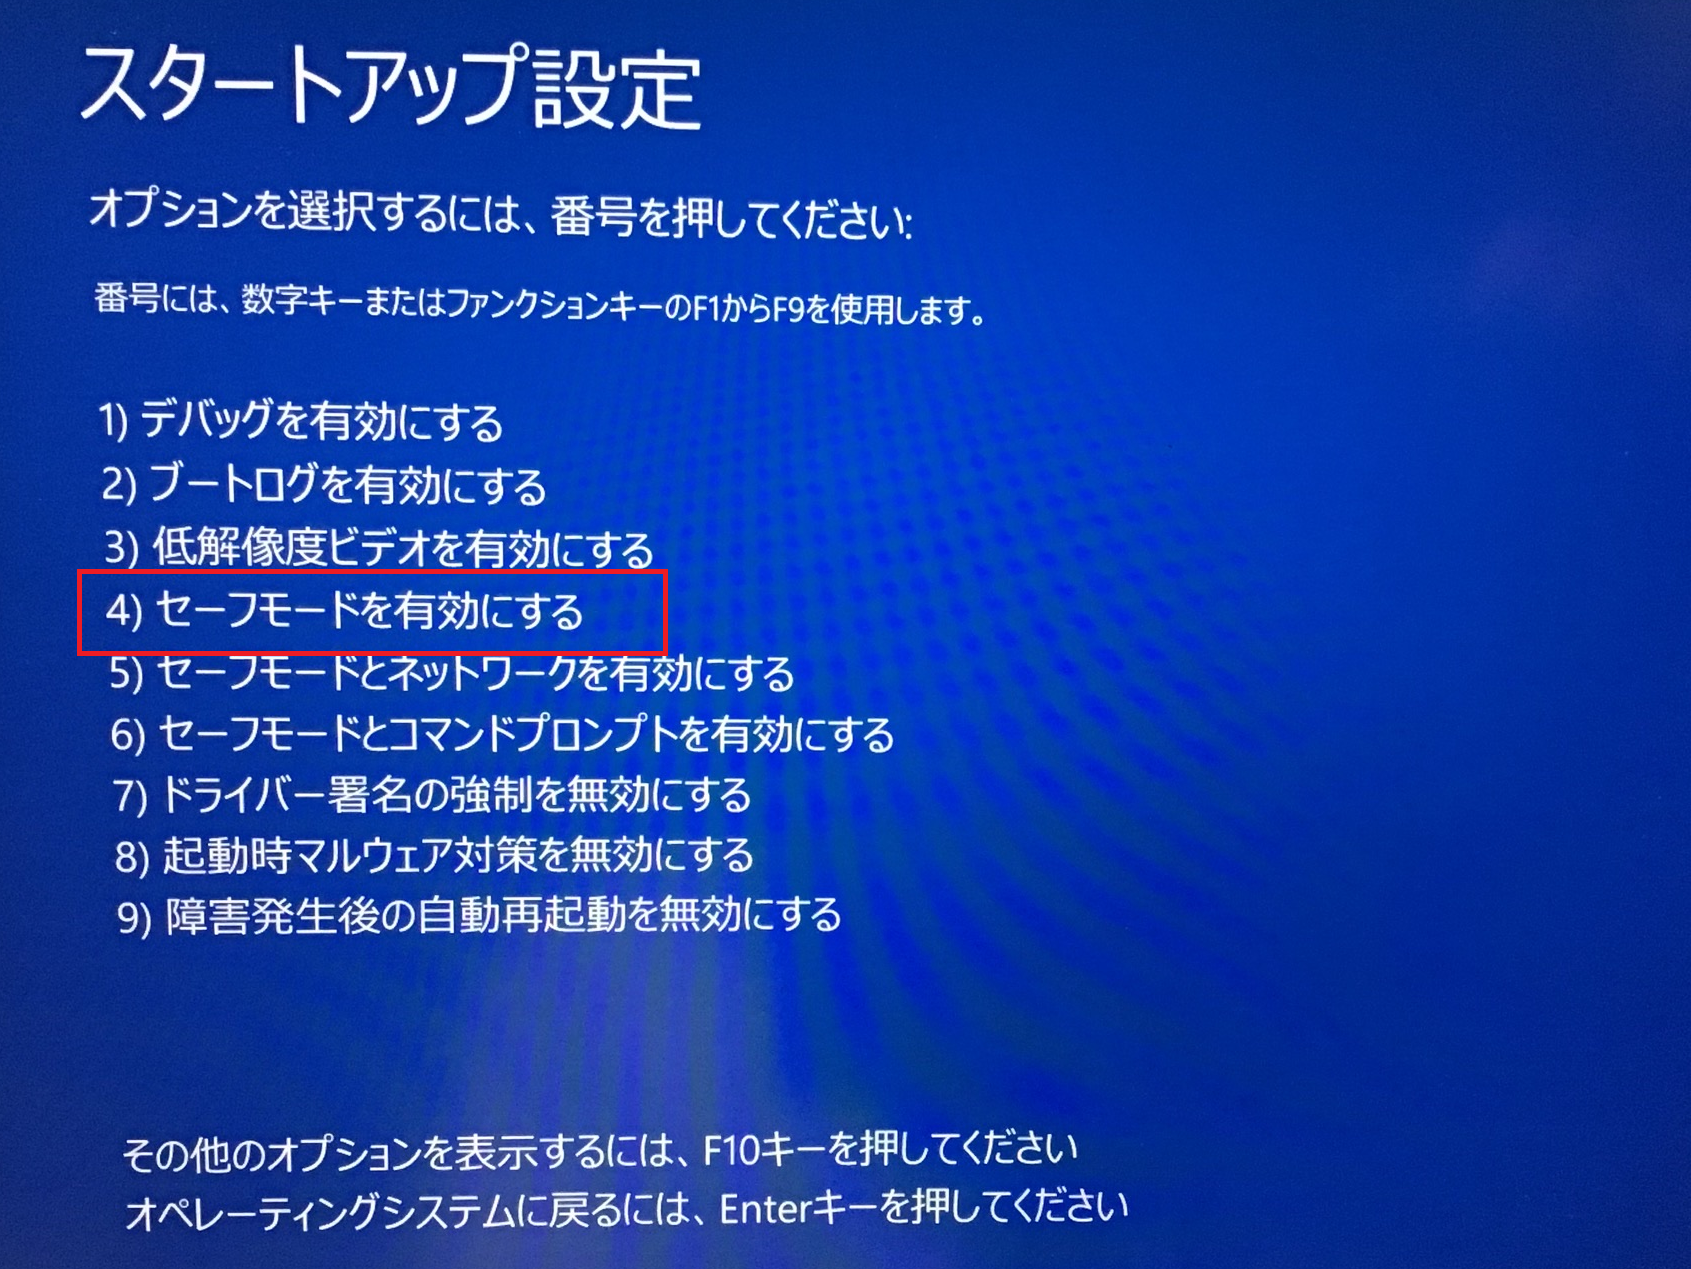 Windows:パソコンが再起動したら「スタートアップ設定」画面が表示されるので「F４」を押下